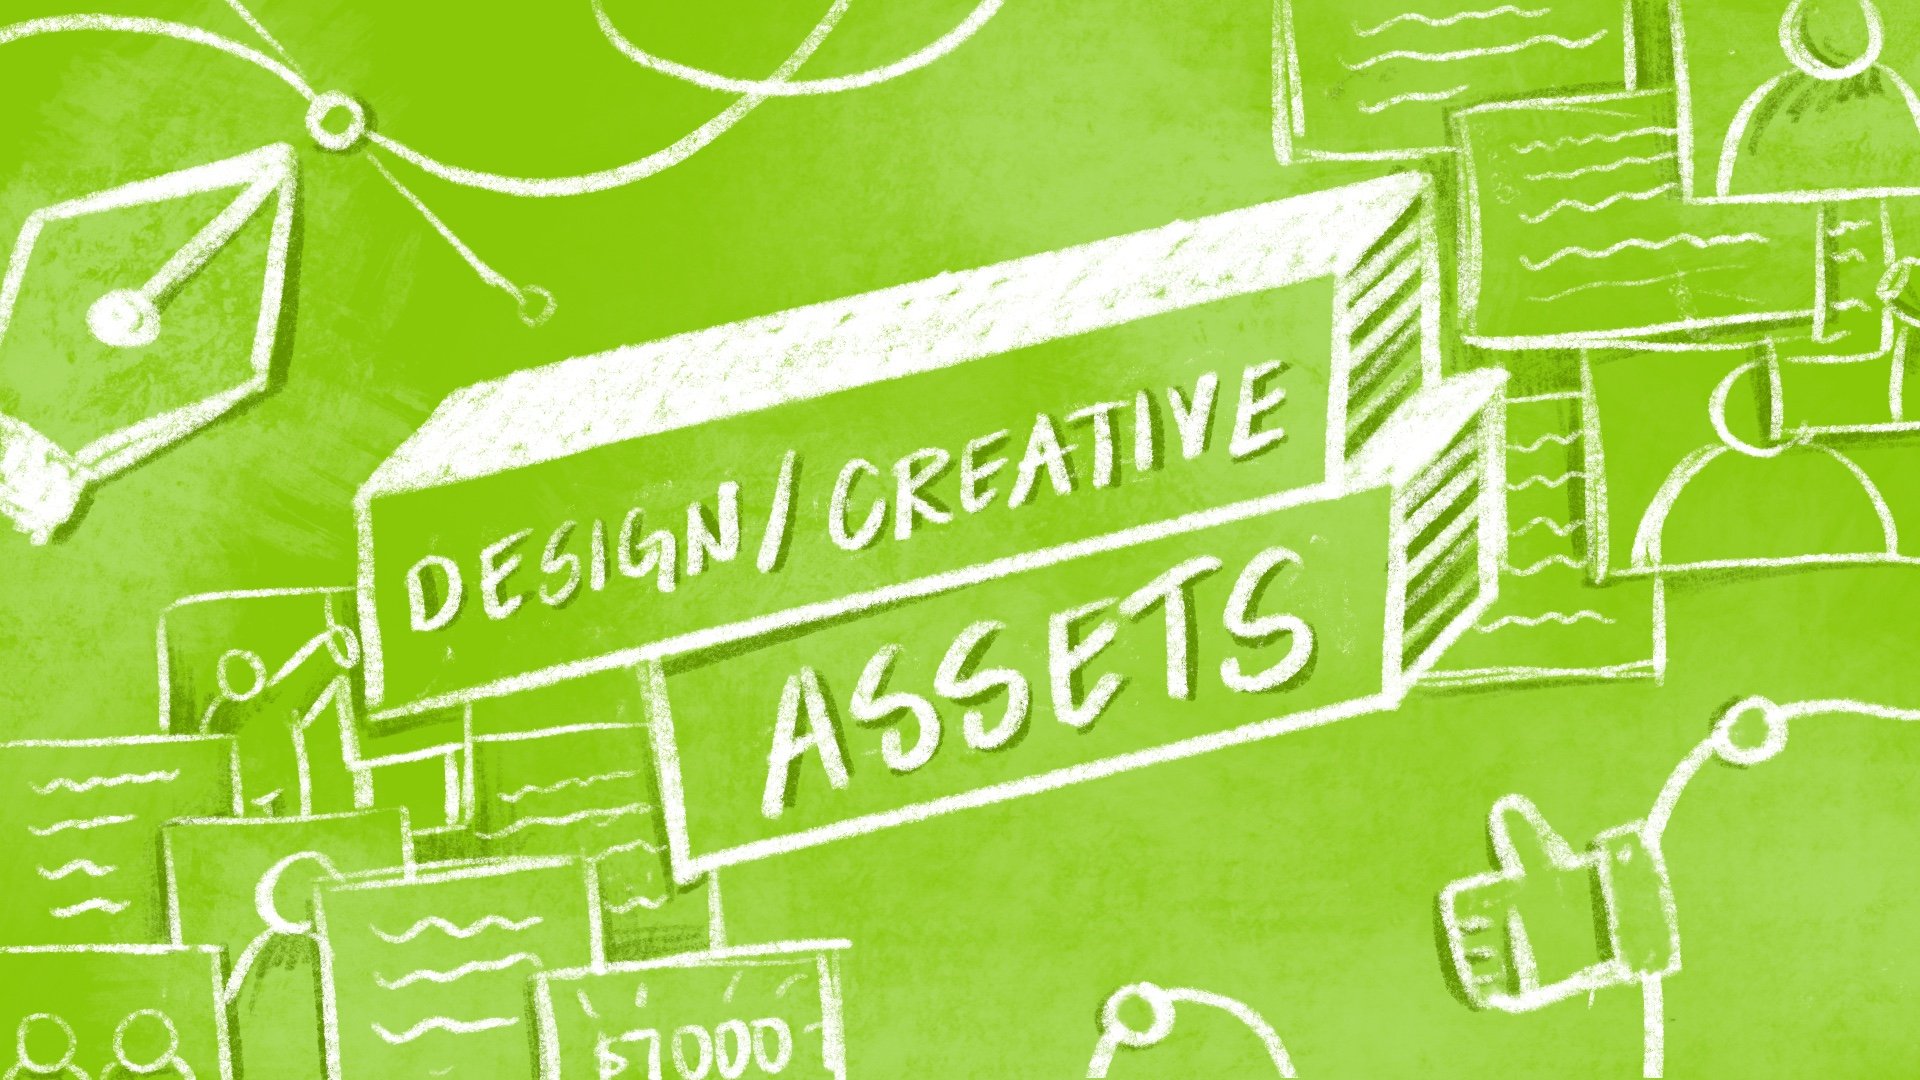 Design+Creative Assets.jpeg